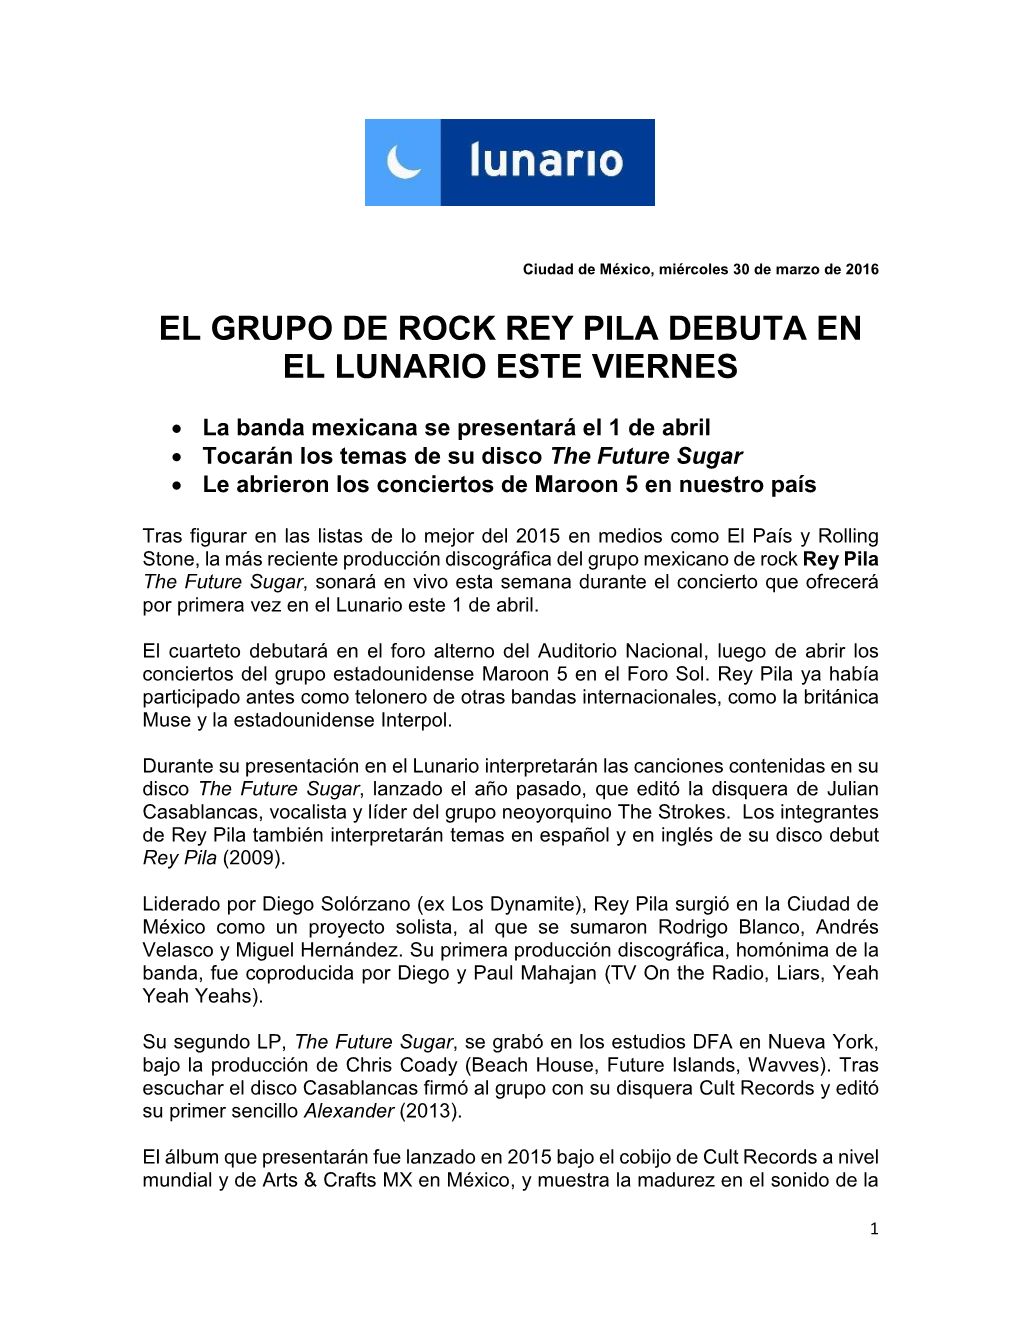 El Grupo De Rock Rey Pila Debuta En El Lunario Este Viernes